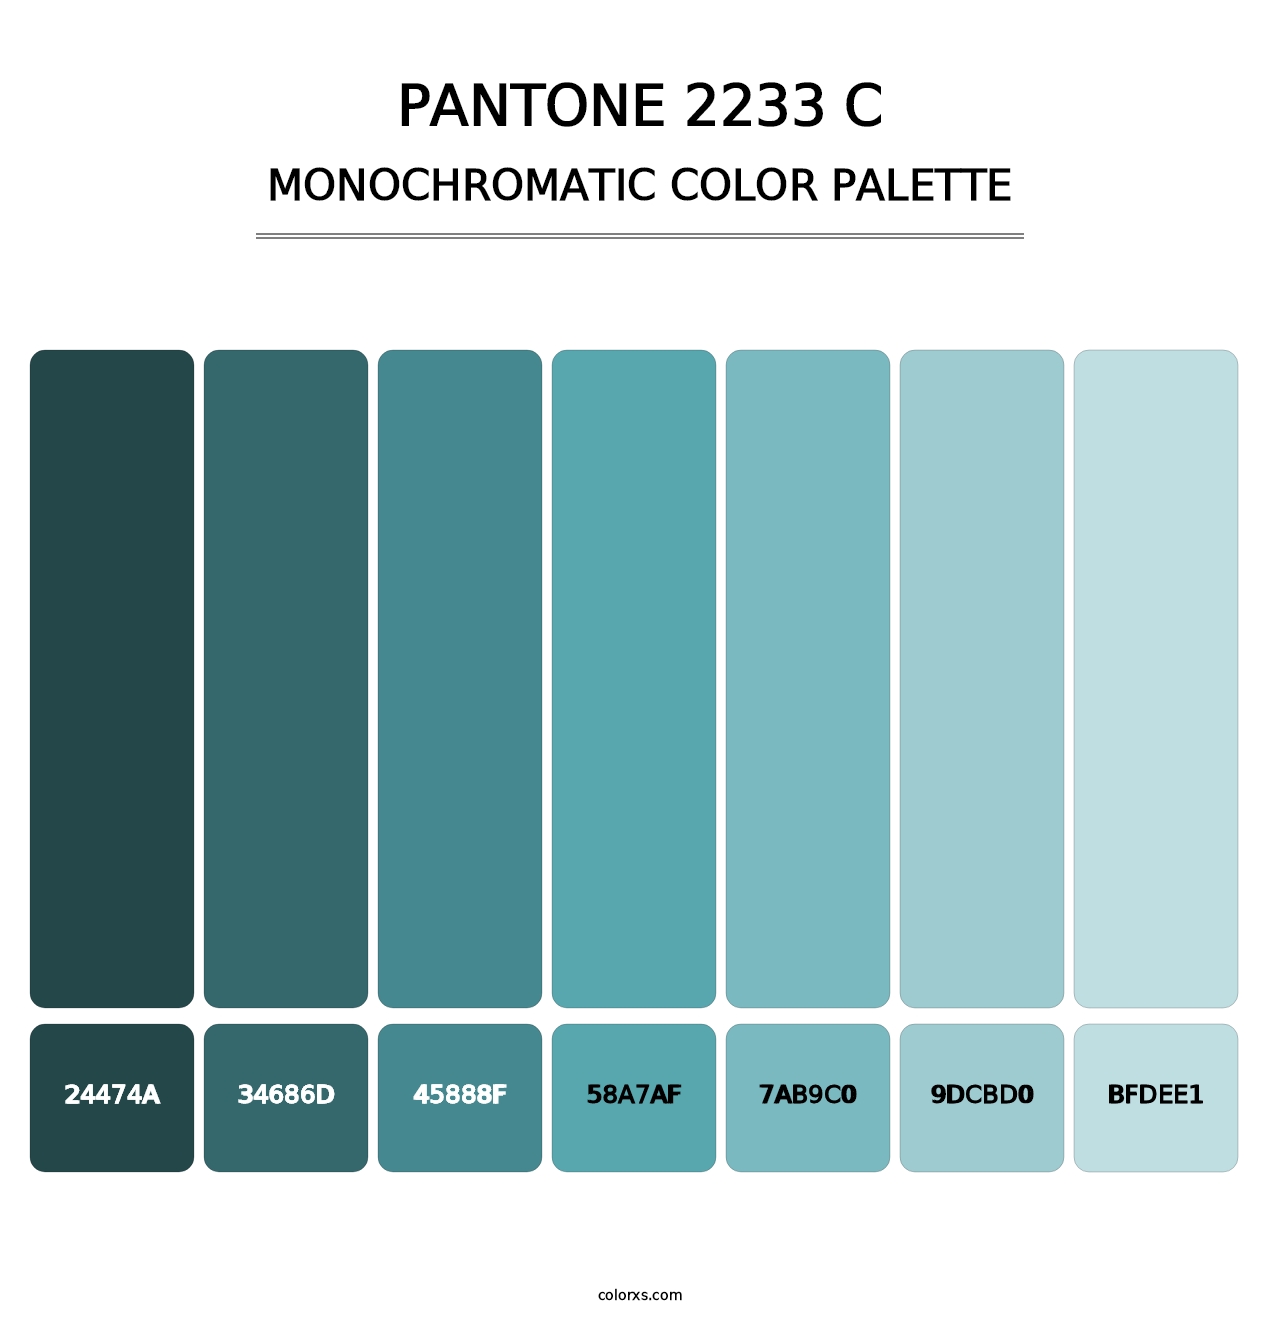 PANTONE 2233 C - Monochromatic Color Palette